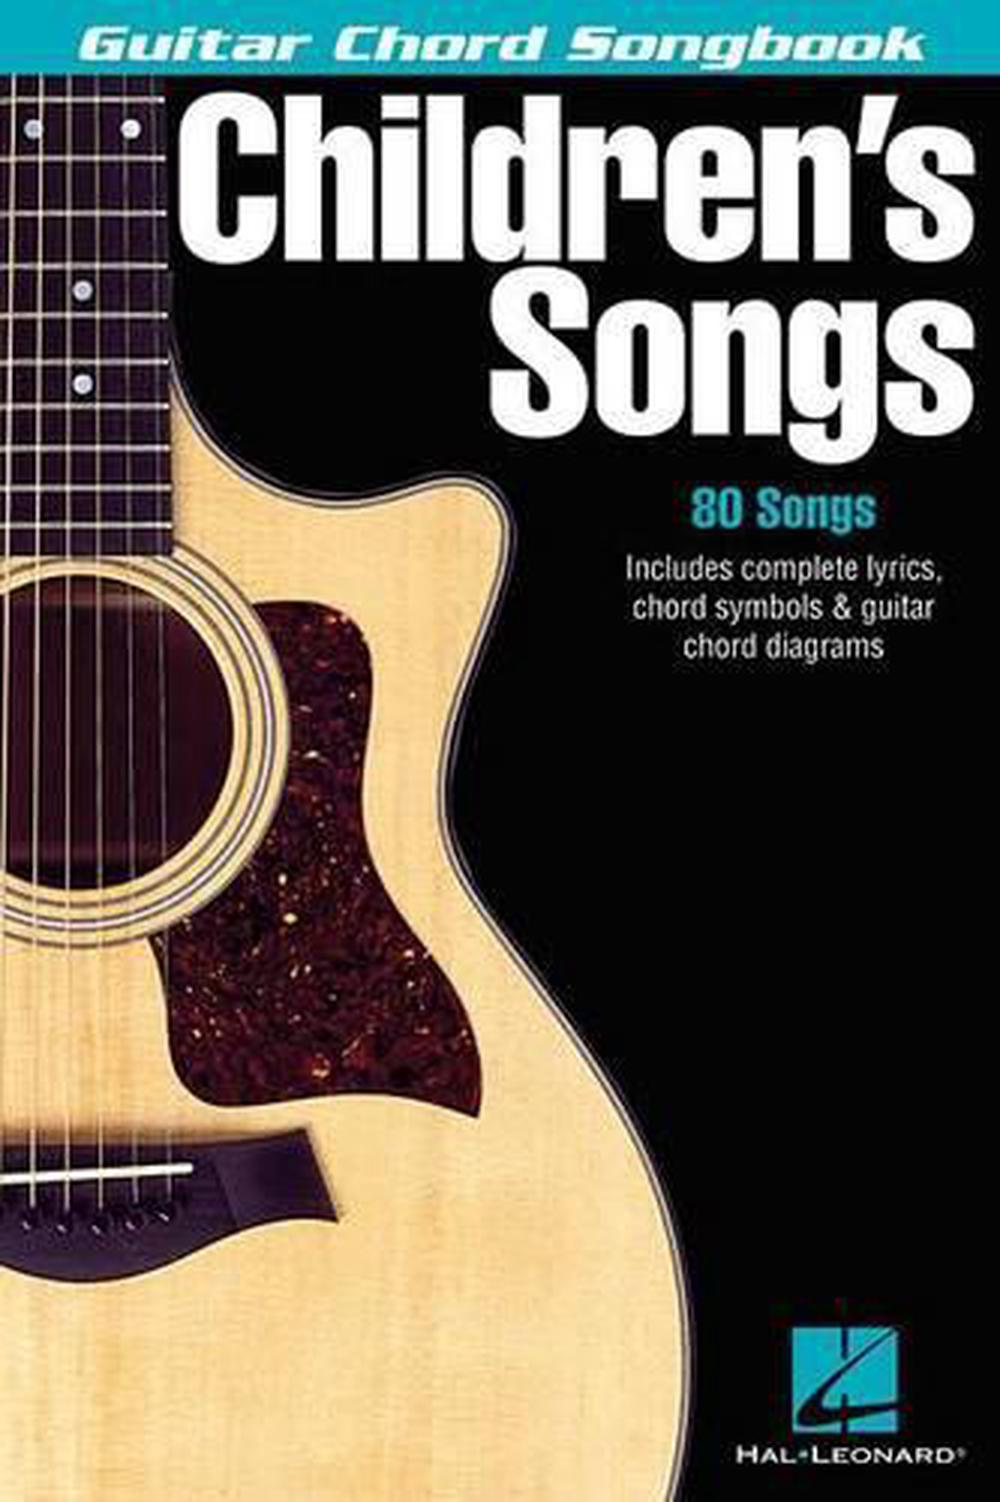 guitar chord songbook